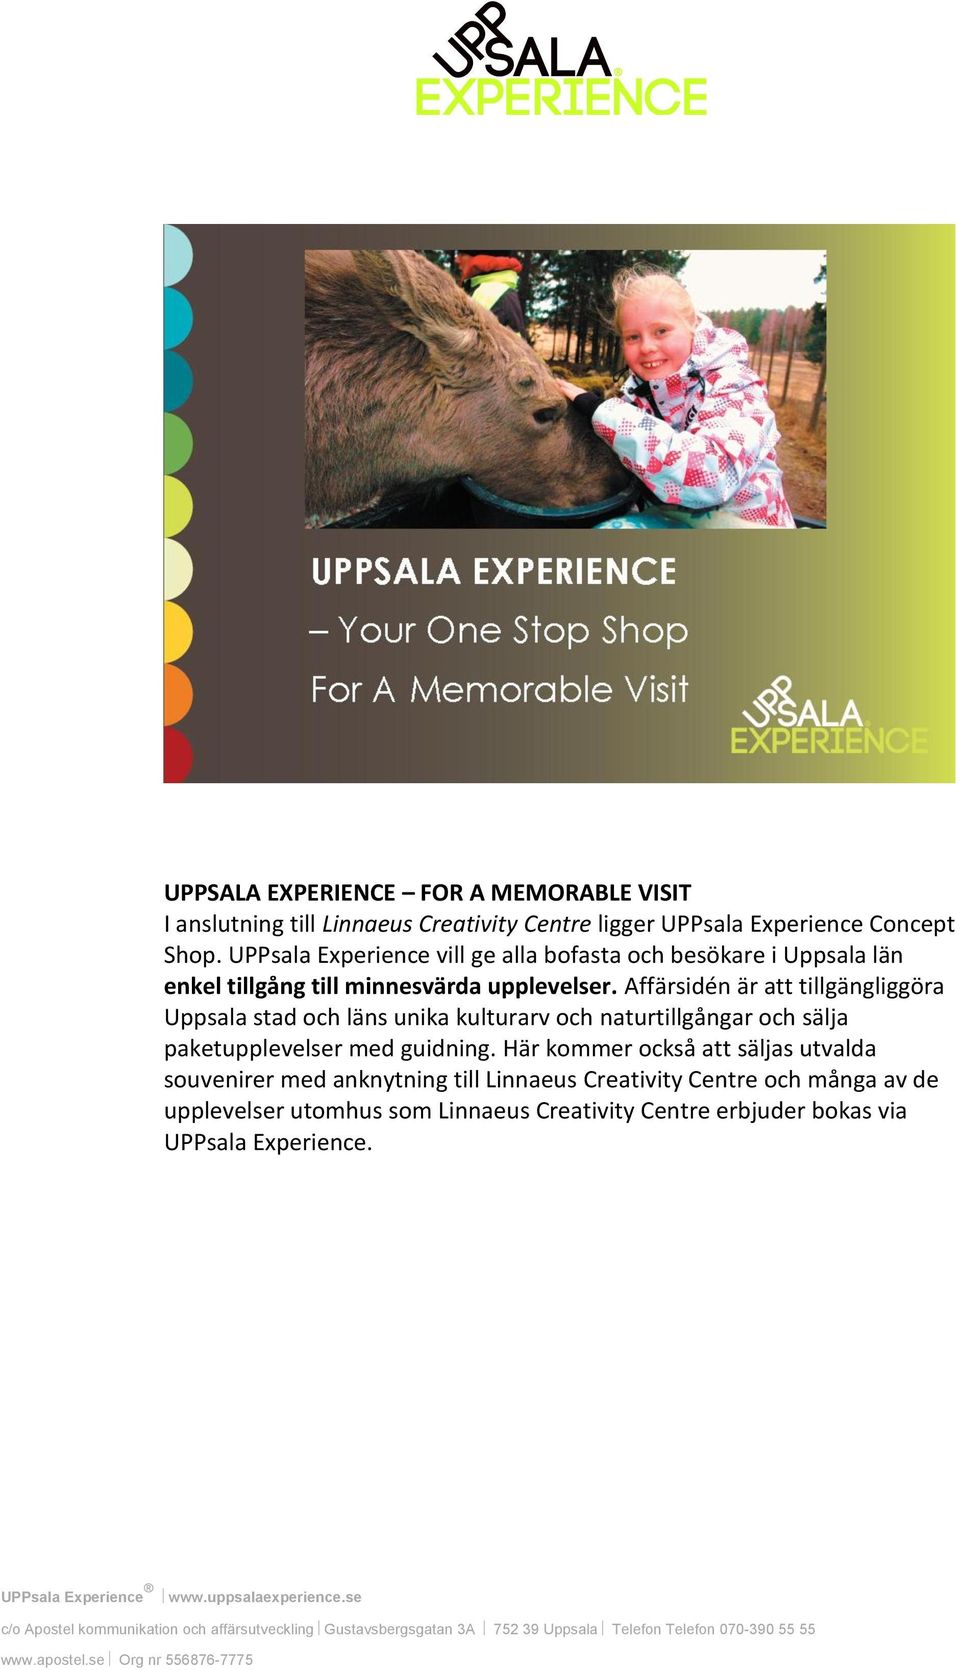 Affärsidén är att tillgängliggöra Uppsala stad och läns unika kulturarv och naturtillgångar och sälja paketupplevelser med guidning.